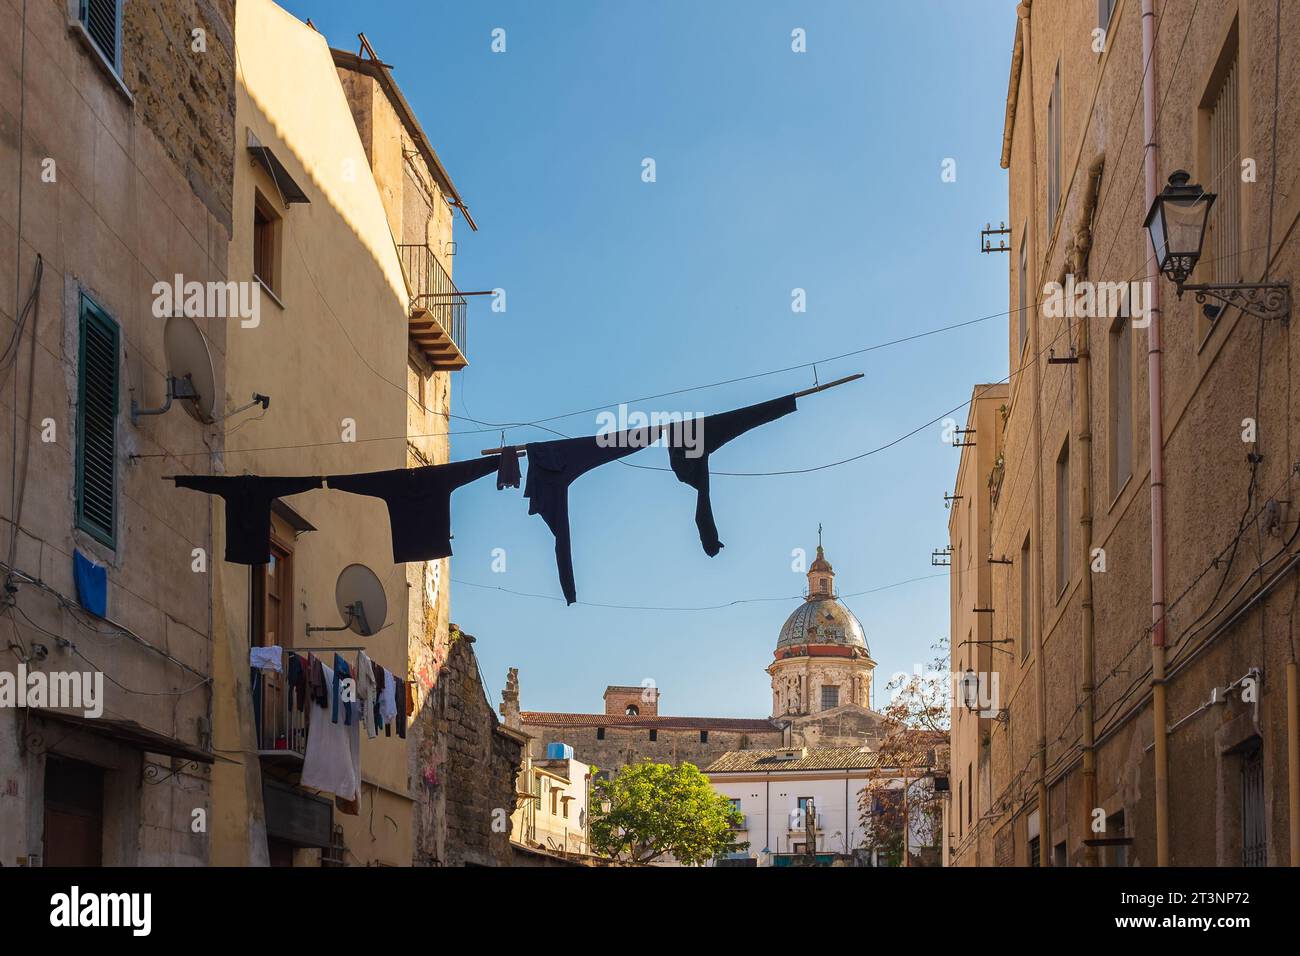 Palerme, Sicile, 2016. Séchage du linge sur une ligne à vêtements, avec l'église du Carmine Maggiore et son dôme carrelé de maiolica en arrière-plan Banque D'Images